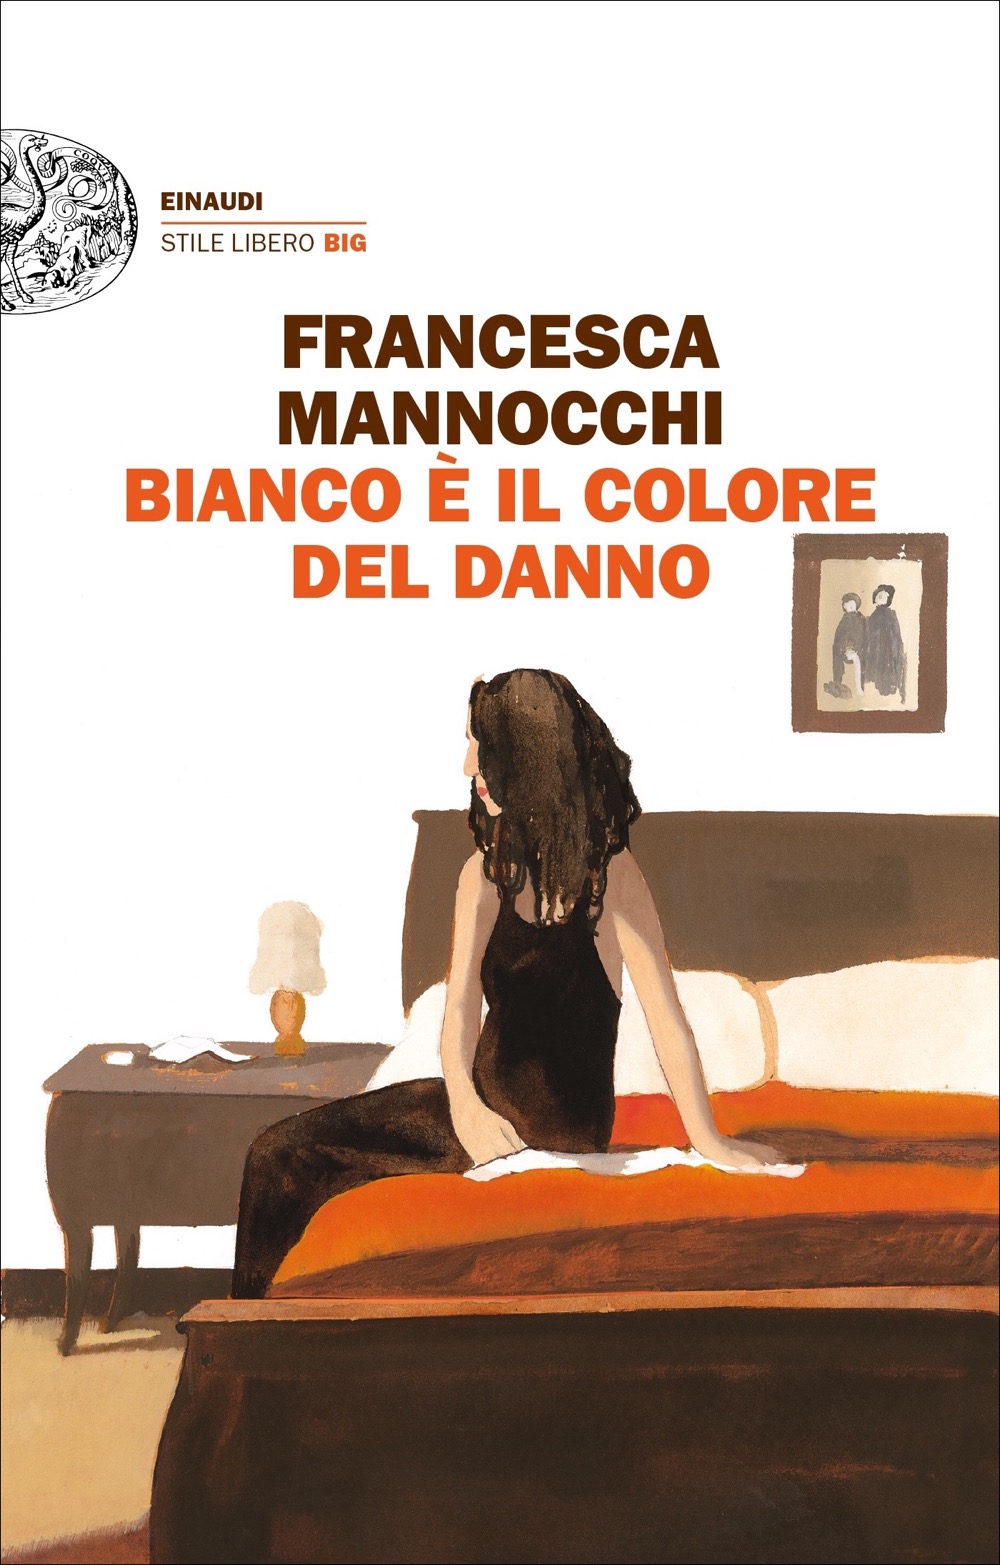 Interviste: Francesca Mannocchi - Bianco è il colore del danno (23-02-21)